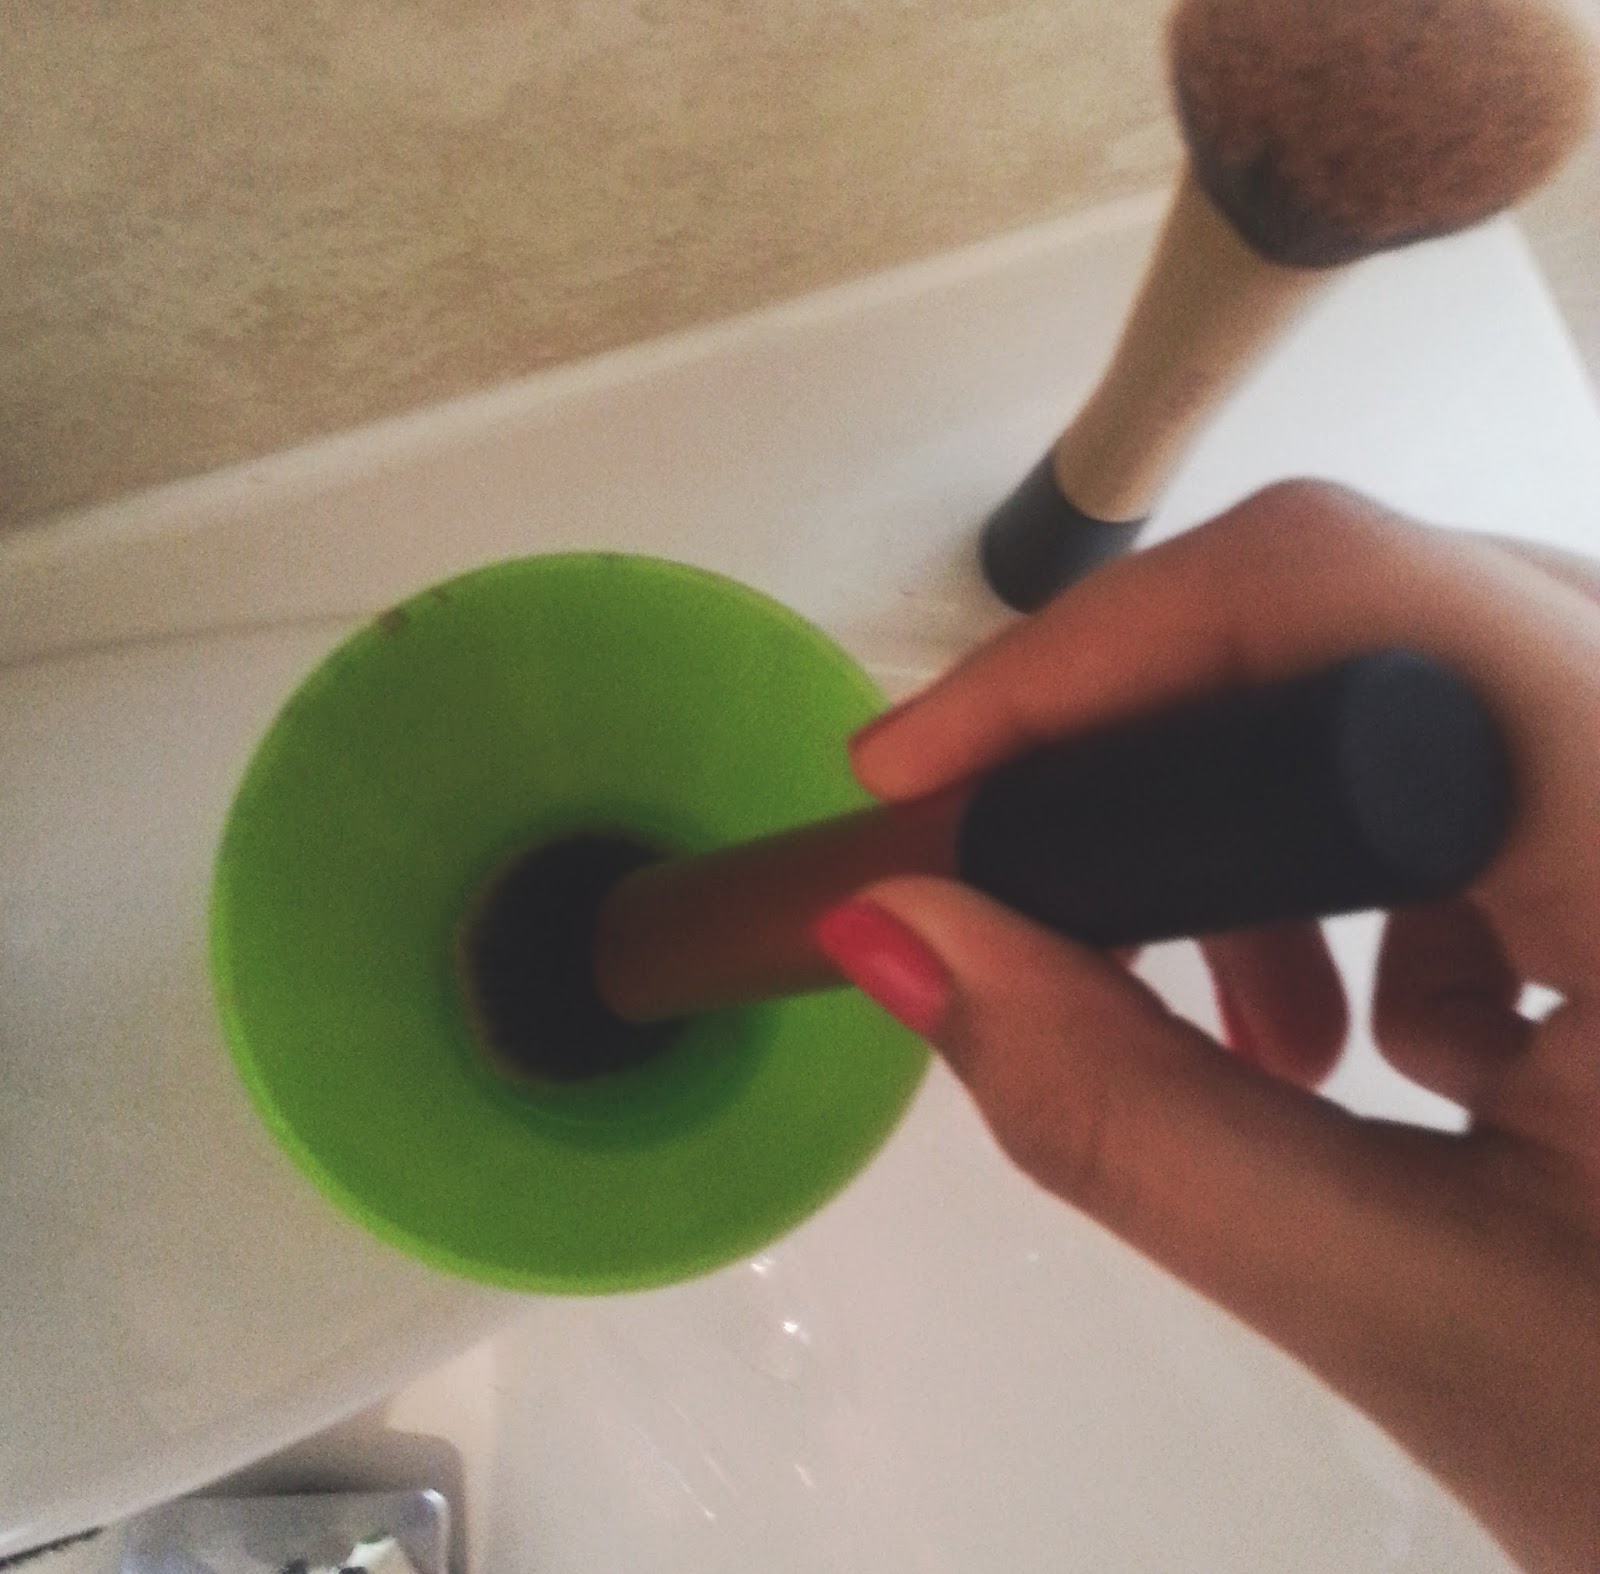 Washing Makeup Brushes With Micellar Water?! 